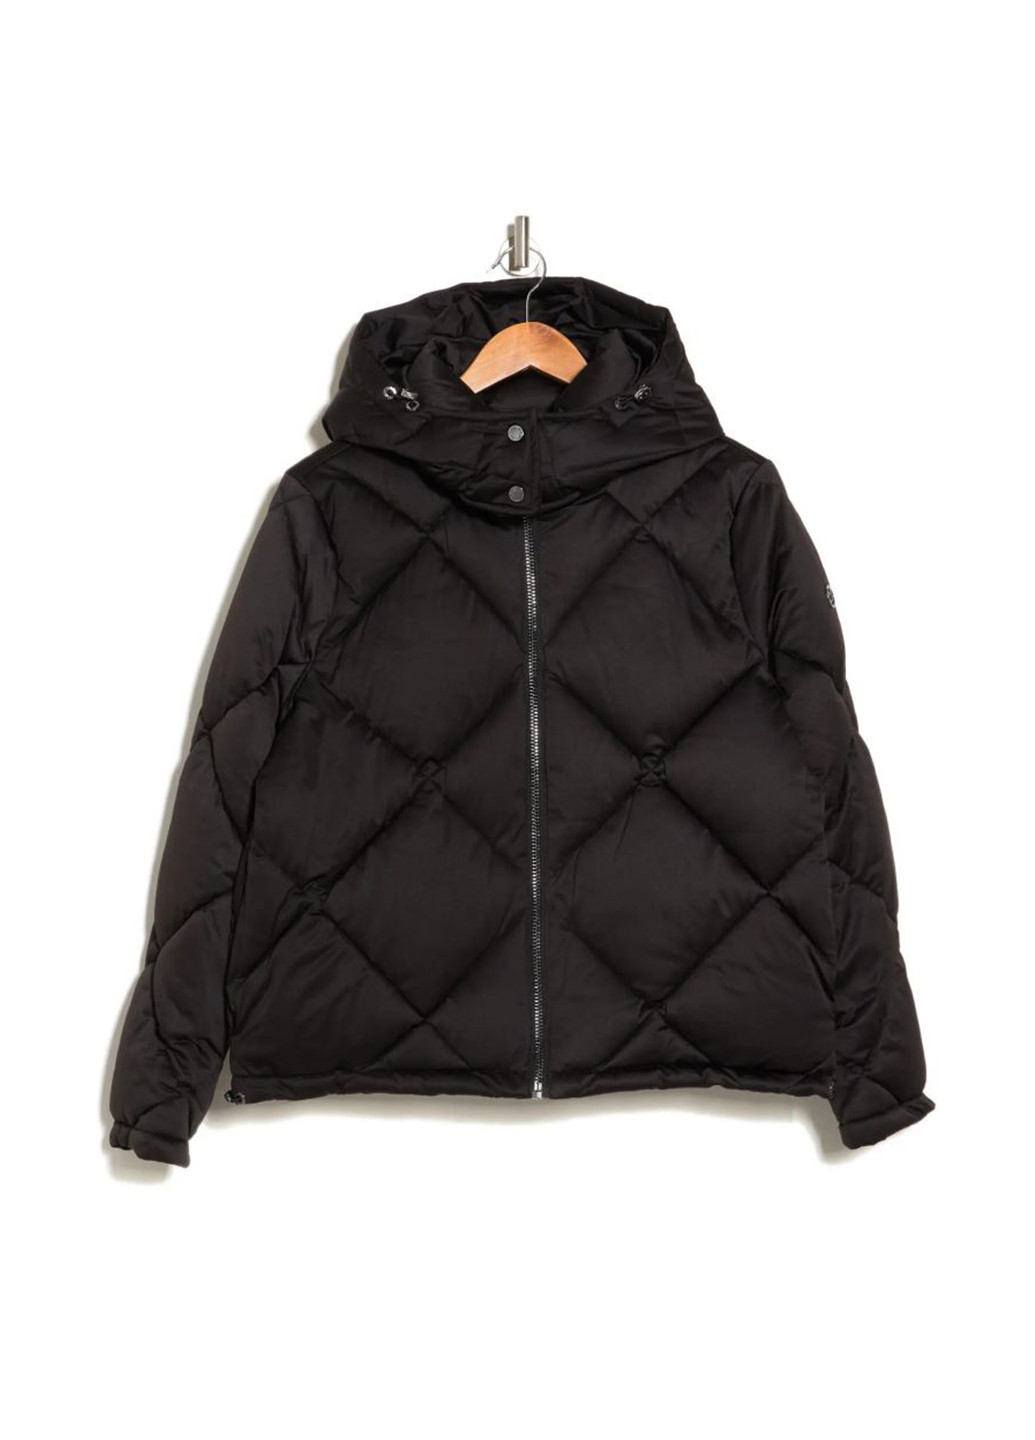 Черная демисезонная куртка куртка-одеяло Calvin Klein